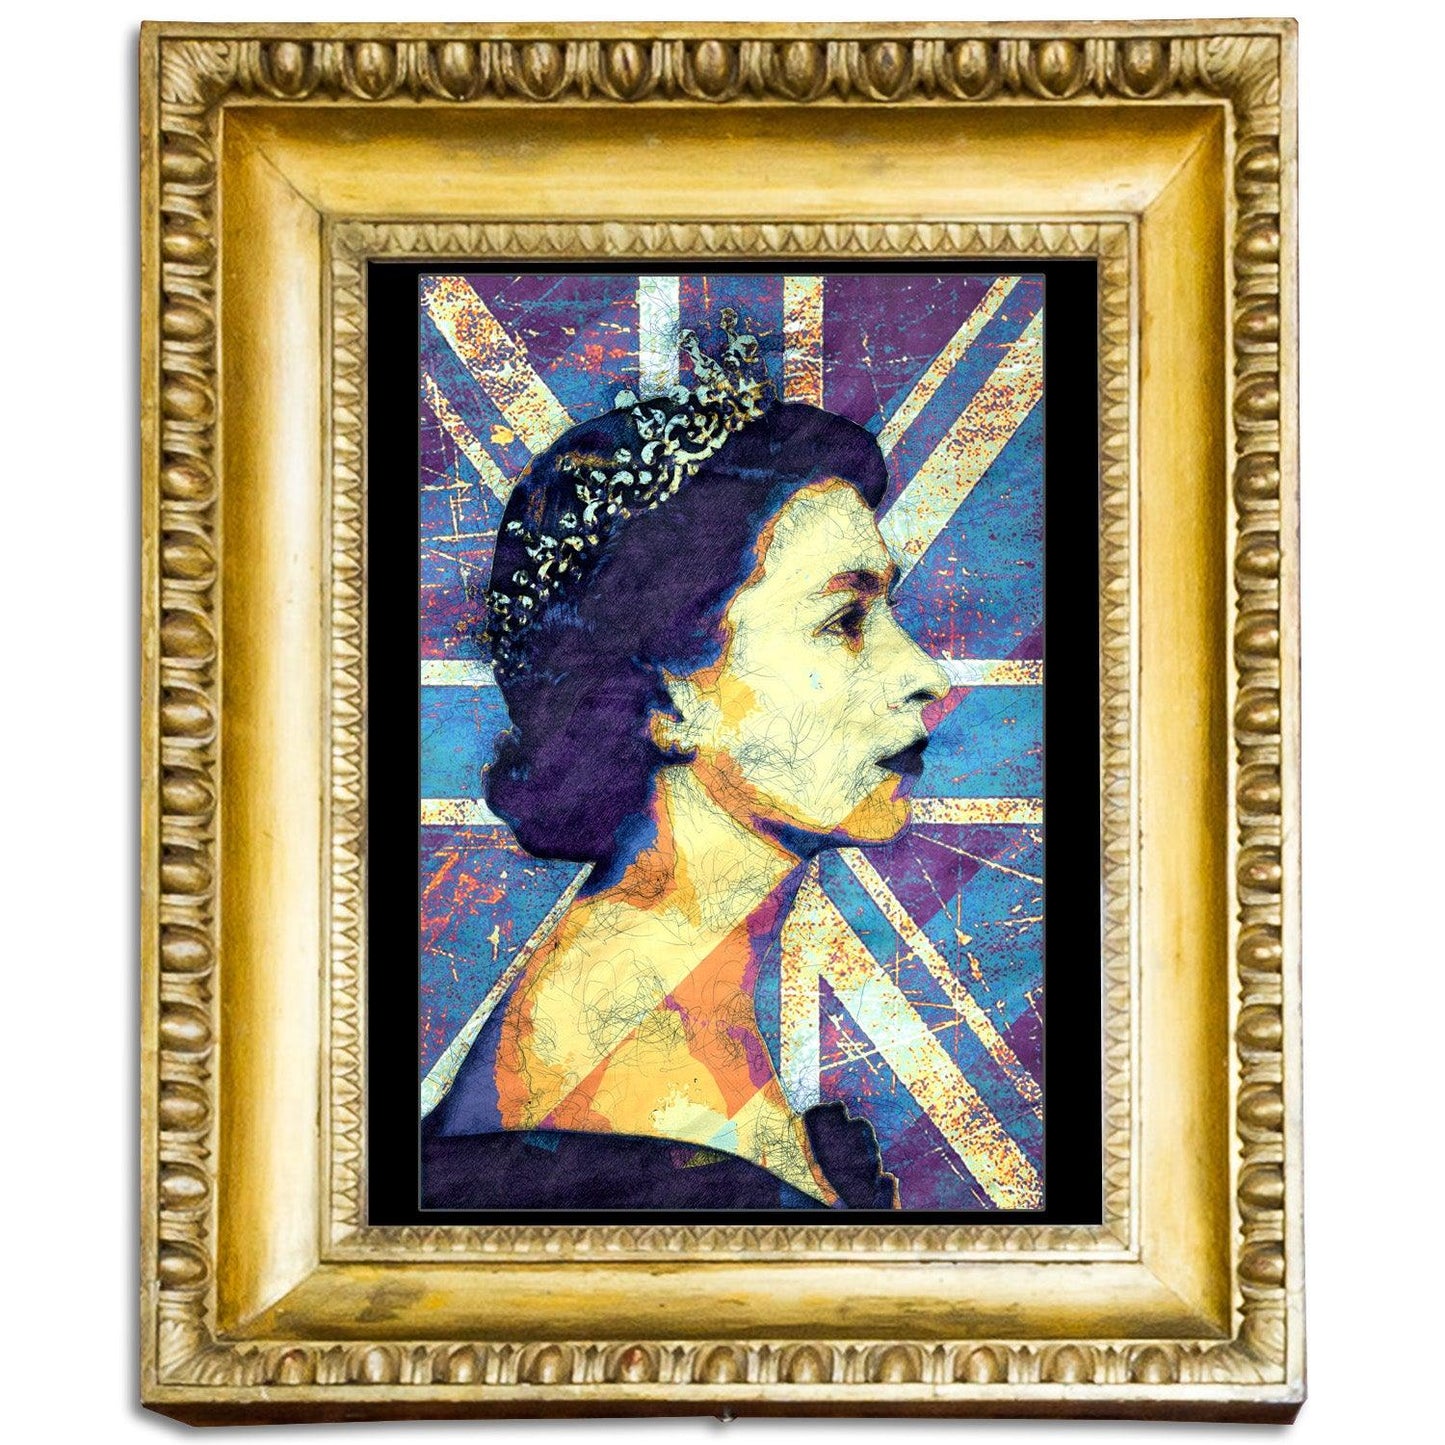 Queen Elizabeth II - The Union Jack 1 - ArtCursor